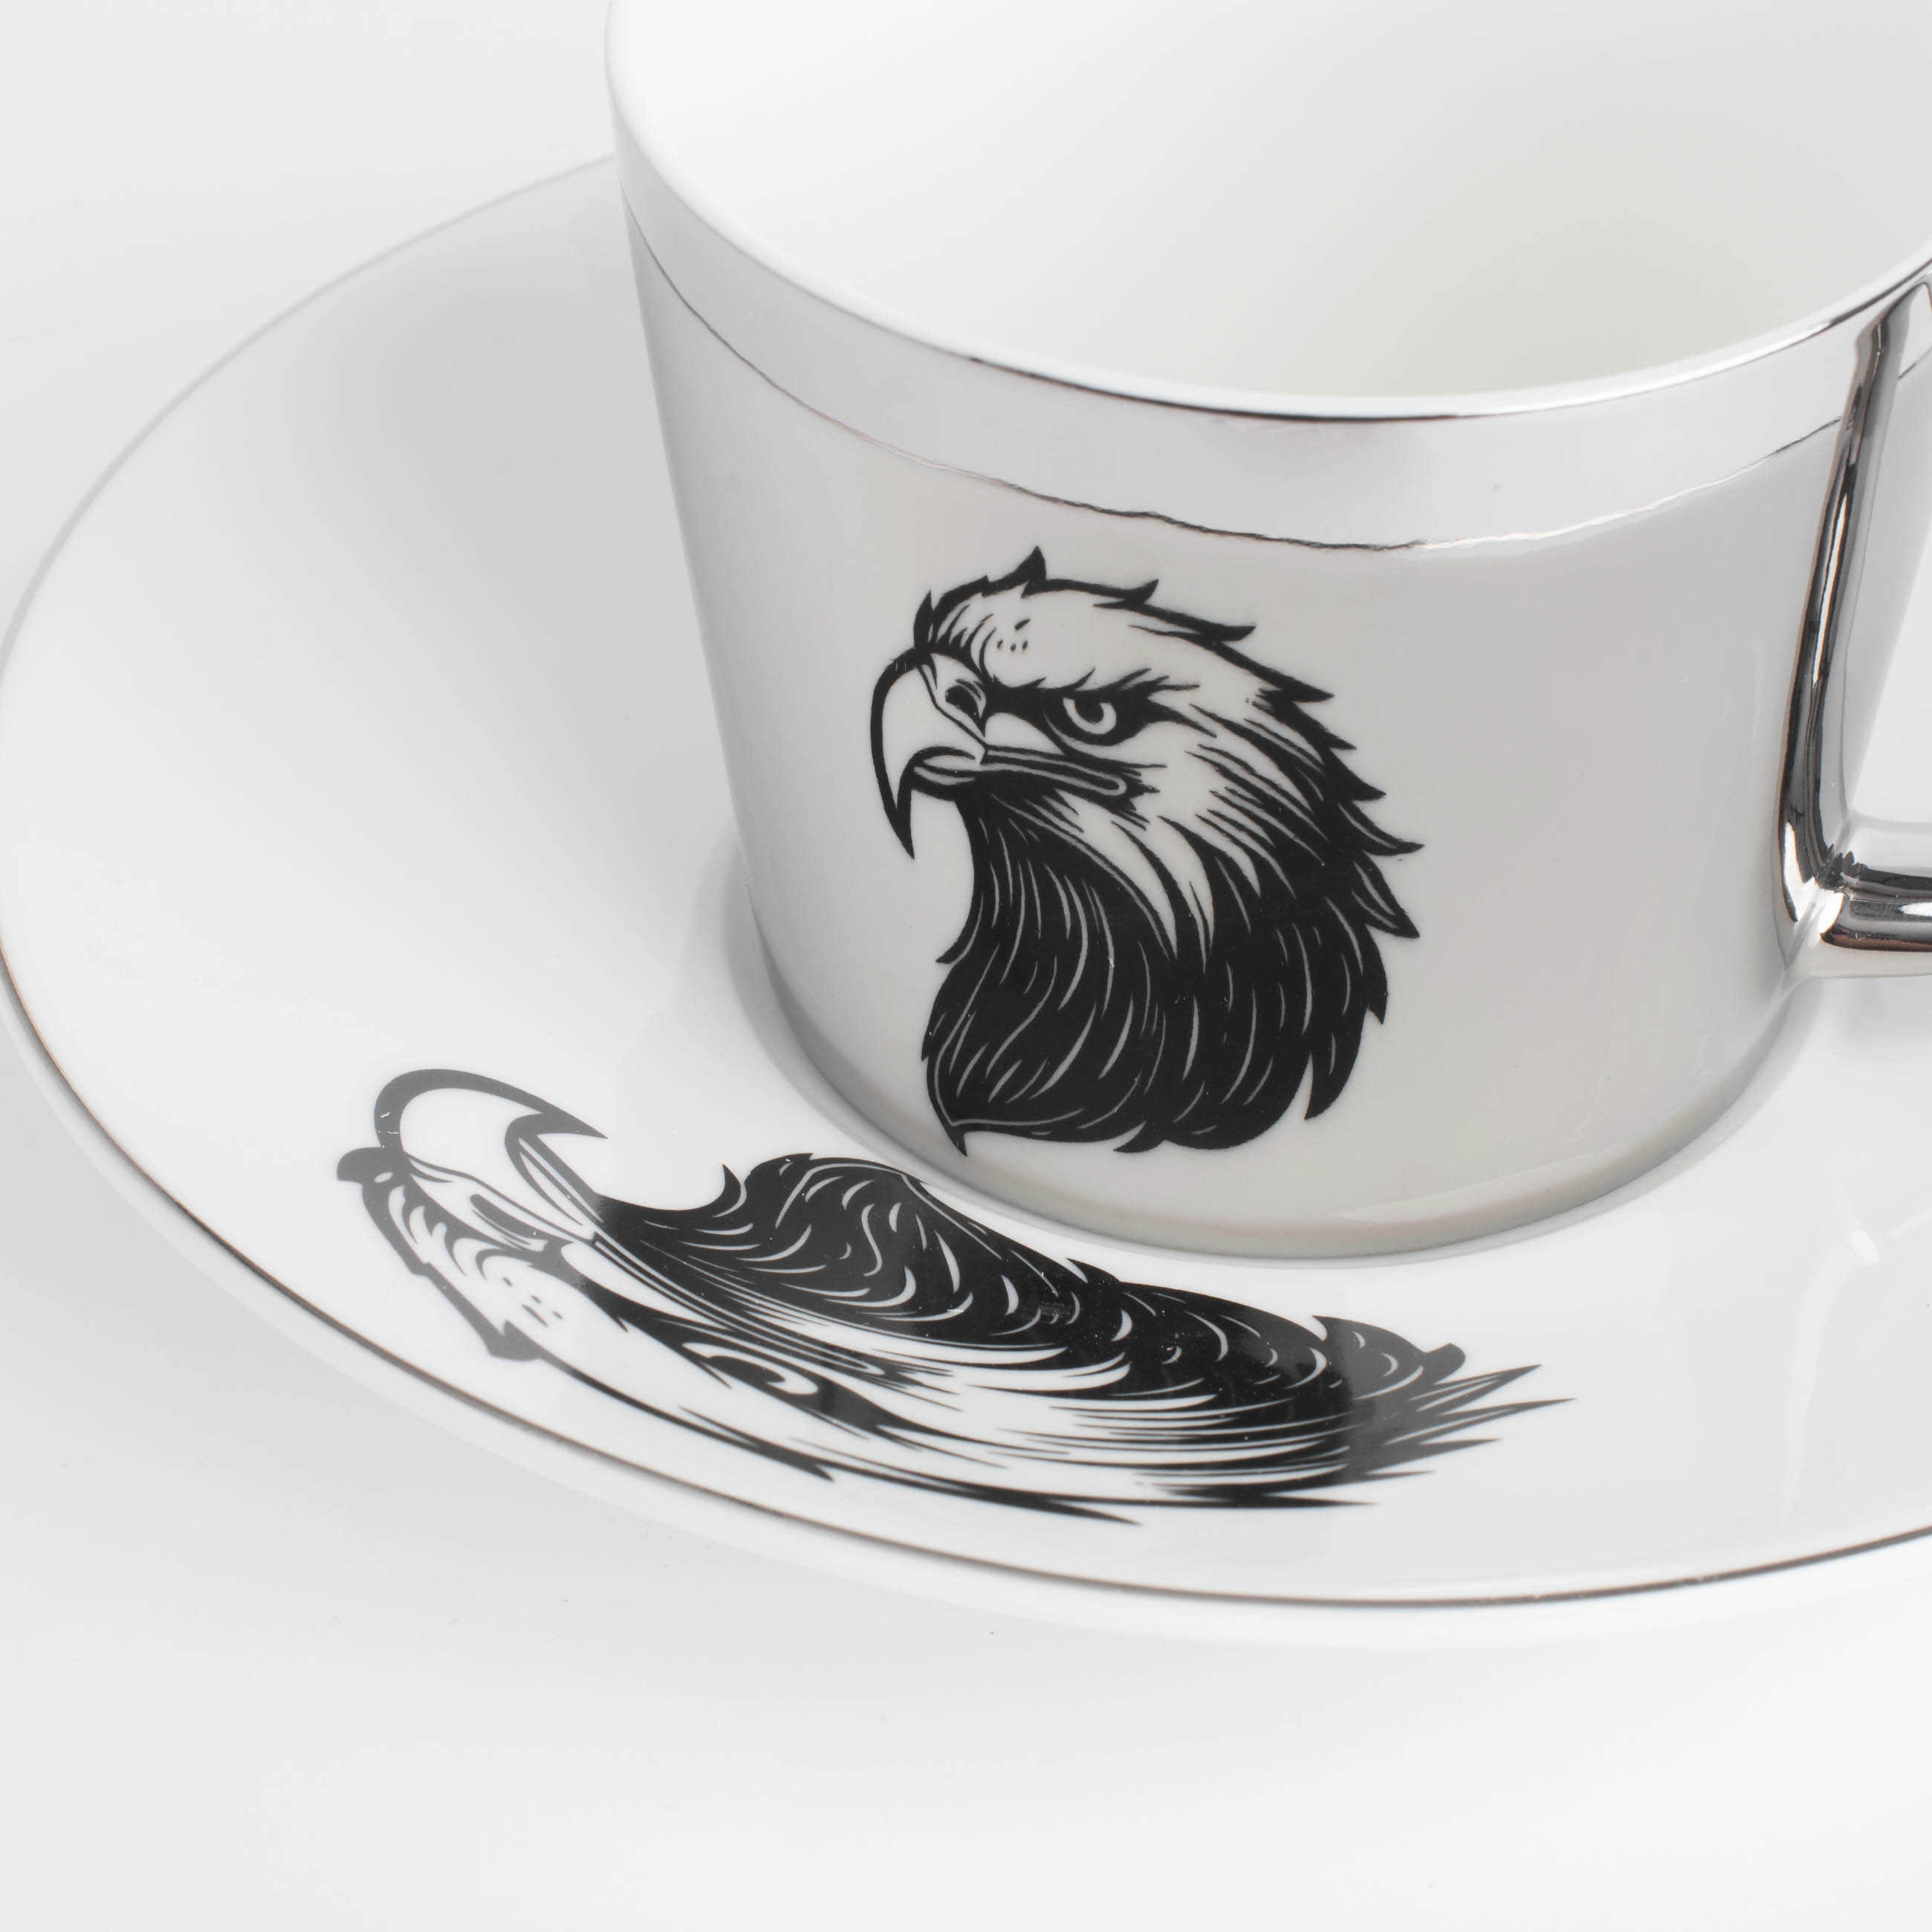 Пара чайная, 1 перс, 2 пр, 230 мл, фарфор P, бело-серебристая, Орел, Eagle изображение № 3